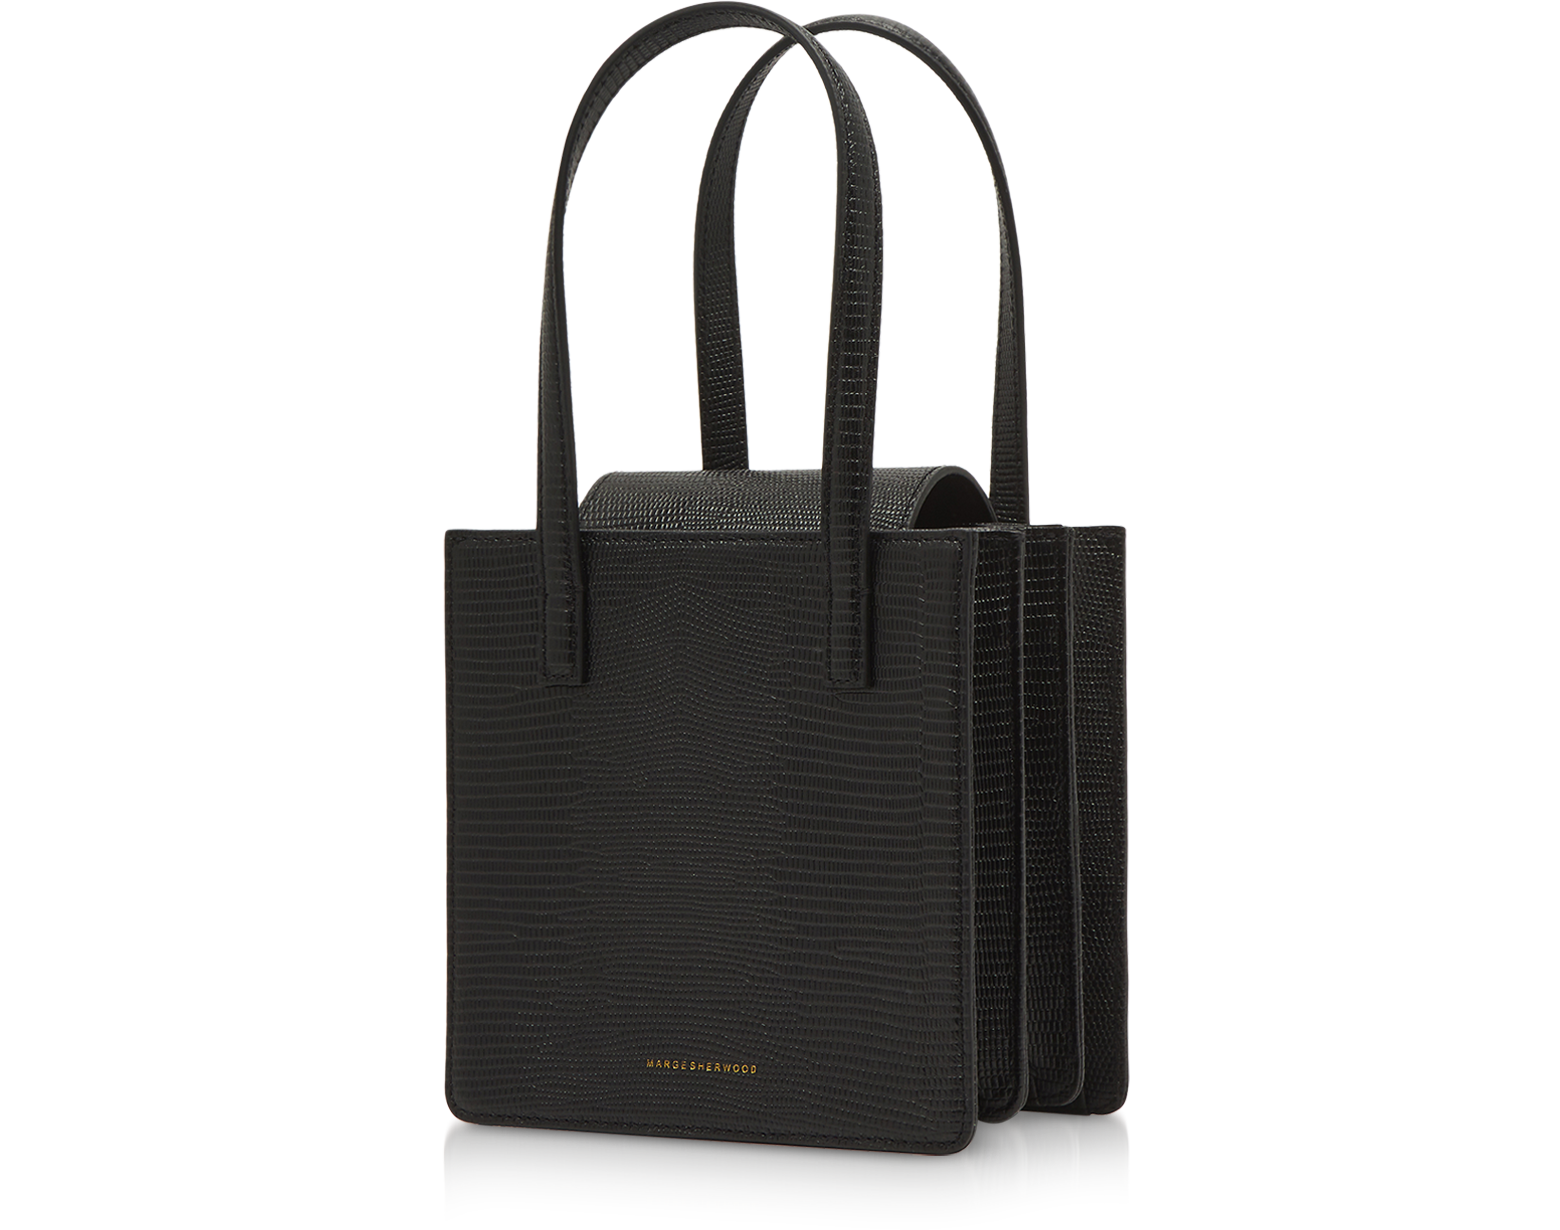 Marge Sherwood Patent Leather Handle Bag - Black Shoulder Bags, Handbags -  WMSHE20202